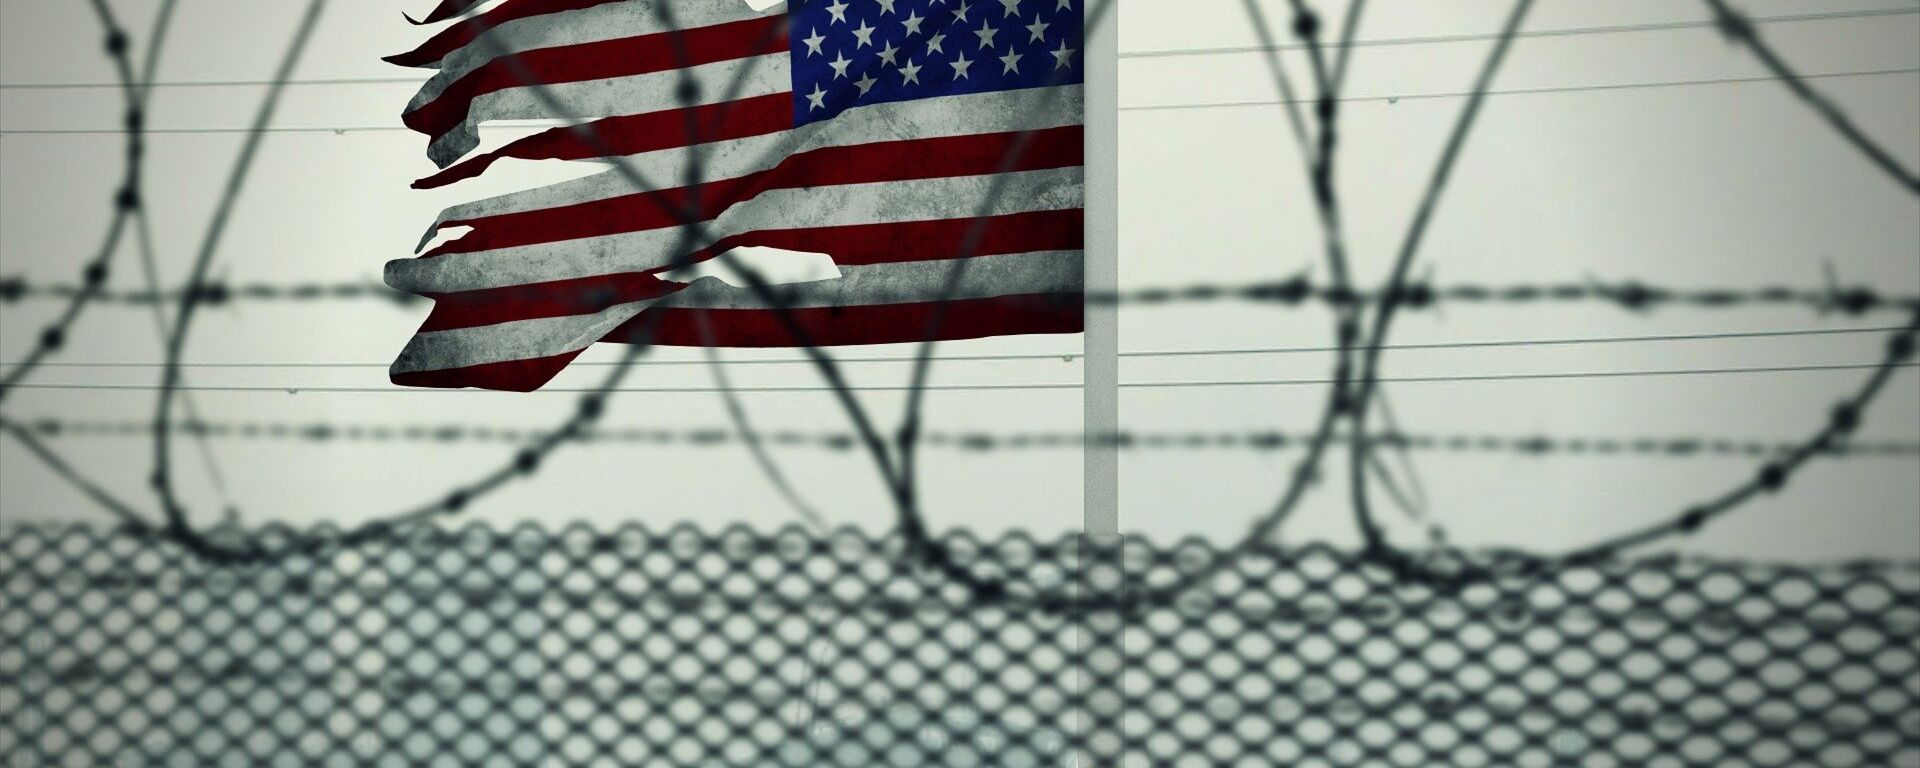 ციხე აშშ-ში - Sputnik საქართველო, 1920, 28.08.2018